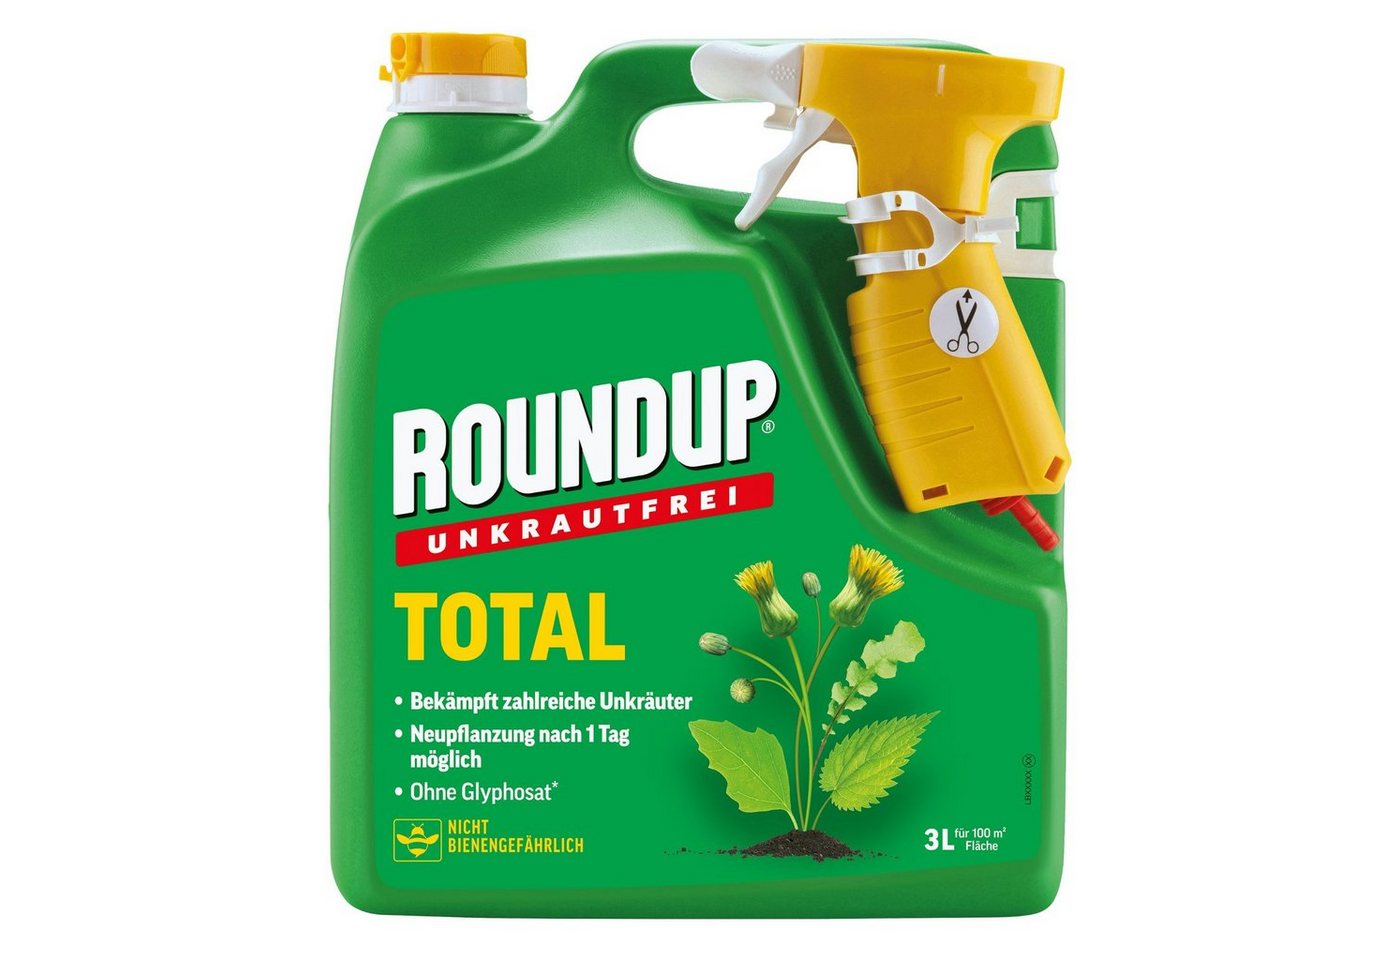 ROUNDUP Unkrautbekämpfungsmittel Unkrautfrei Total - 3 Liter von ROUNDUP